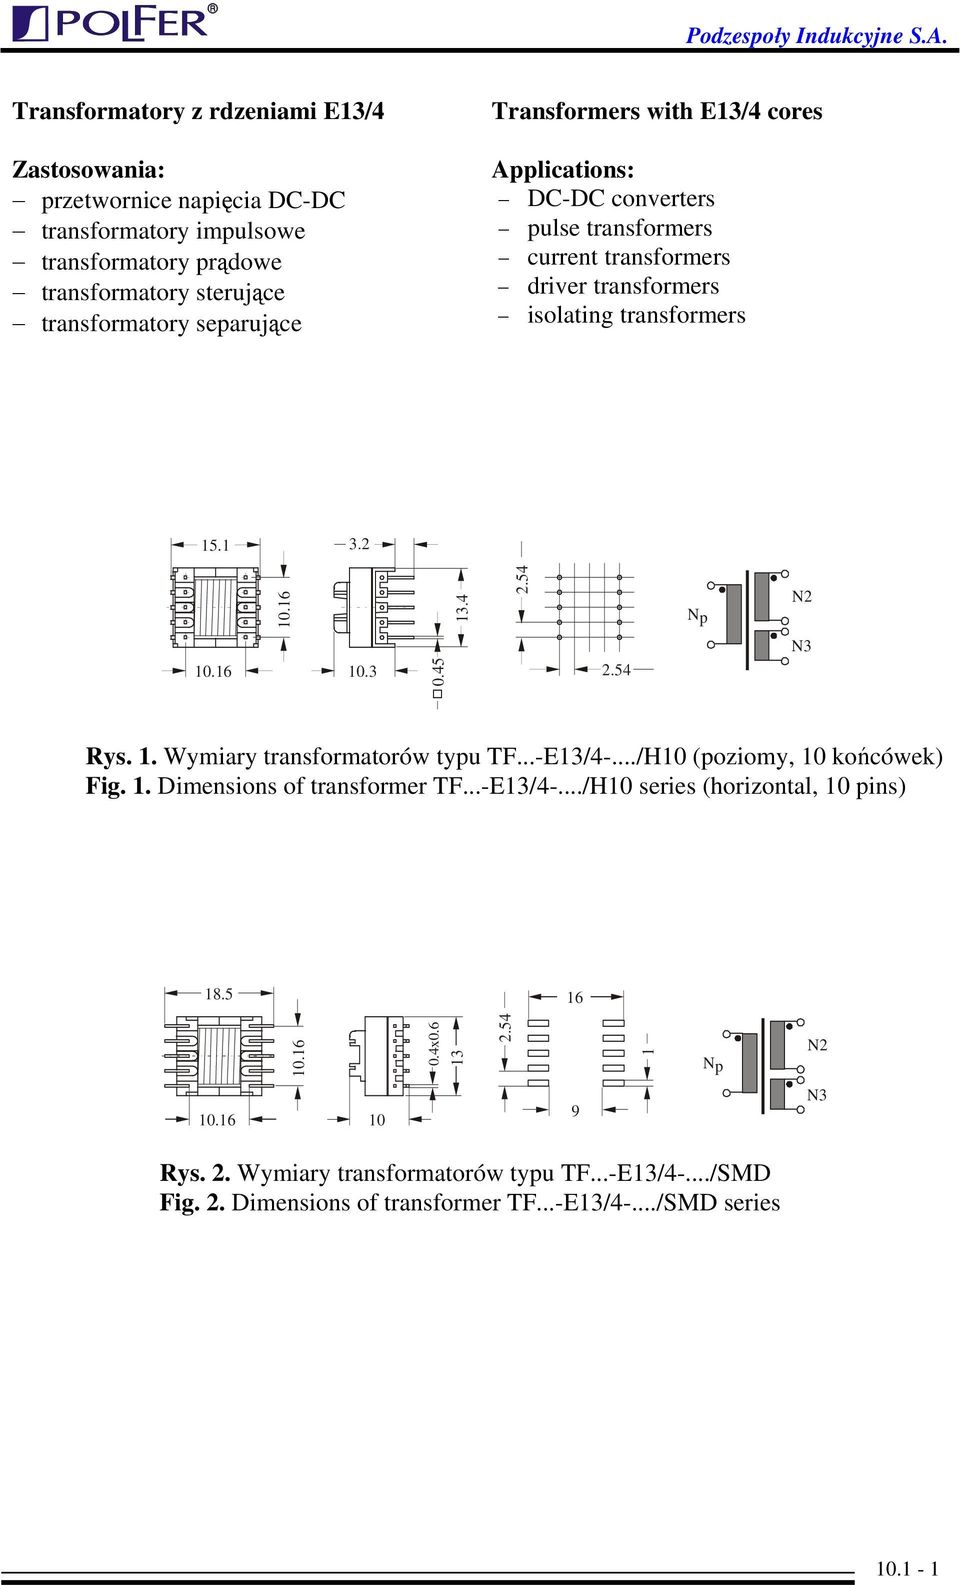 16 10.3 0.45 4 N3 Rys. 1. Wymiary transformatorów typu TF...-E13/4-.../H10 (poziomy, 10 końcówek) Fig. 1. Dimensions of transformer TF...-E13/4-.../H10 series (horizontal, 10 pins) 18.